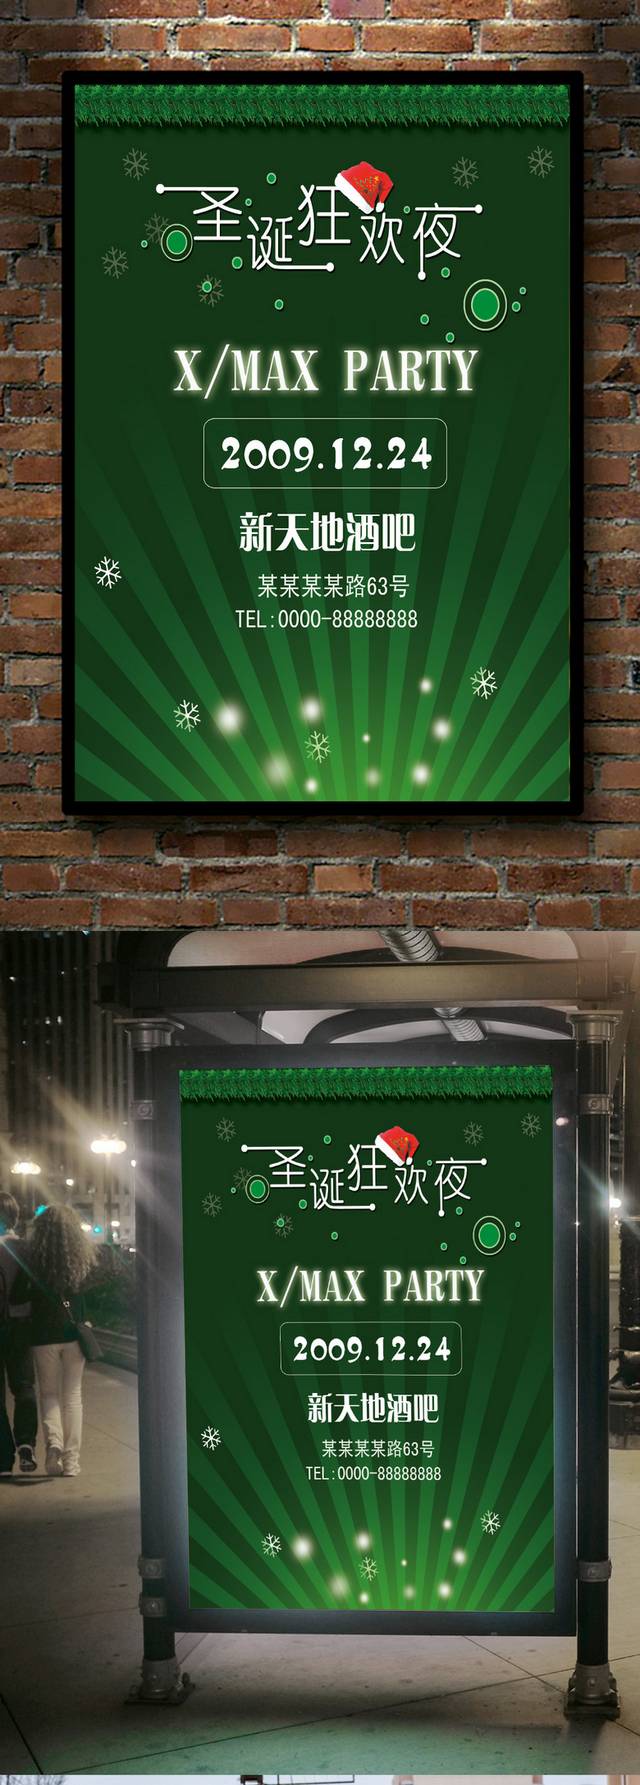 圣诞狂欢夜宣传海报设计